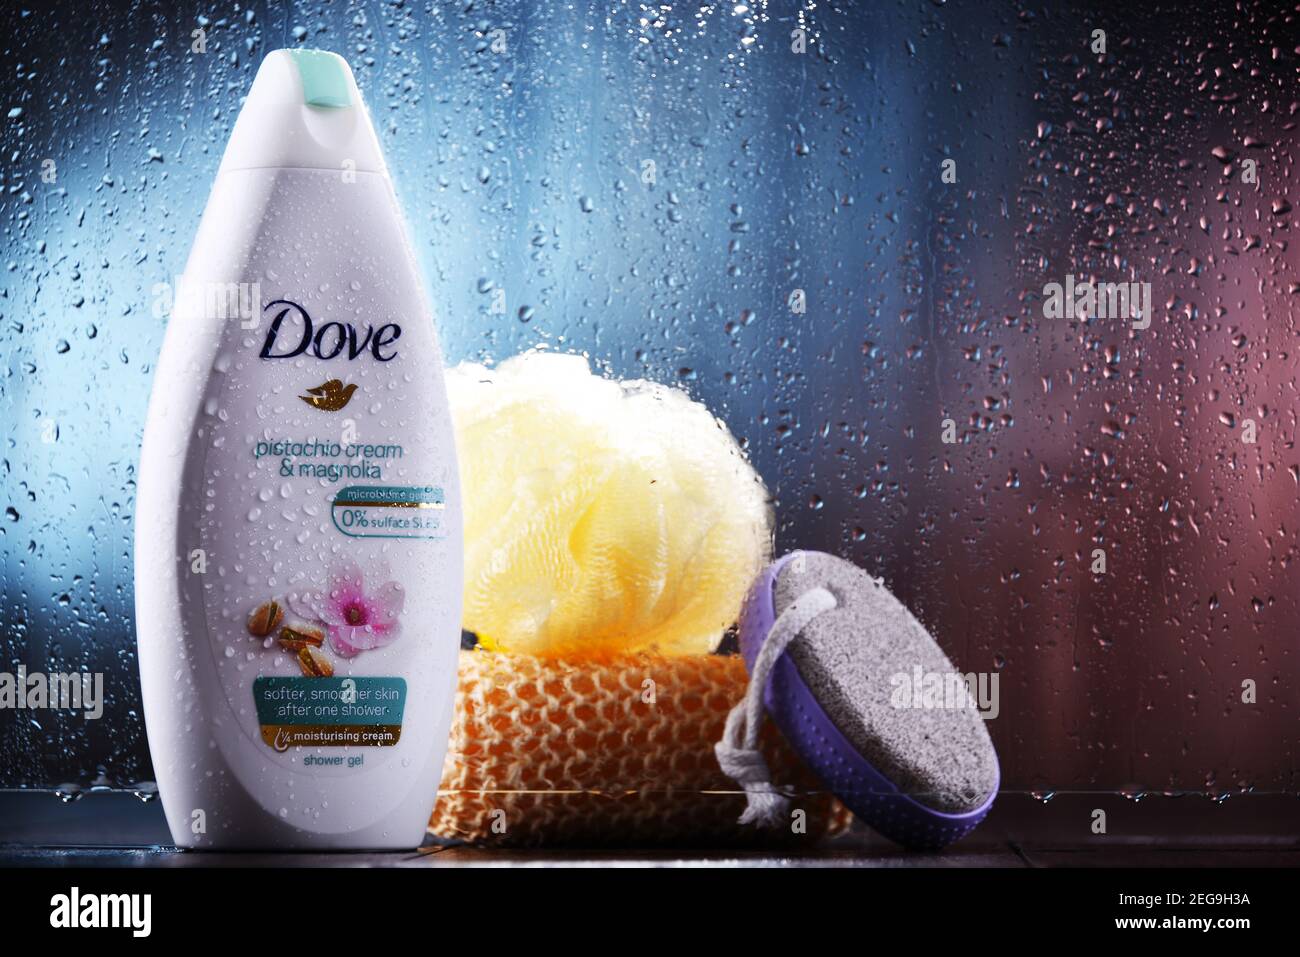 POZNAN, POL - OCT 23, 2020: Container von Dove Produkt, eine Körperpflege-Marke, im Besitz von Unilever und verkauft in mehr als 80 Ländern Stockfoto